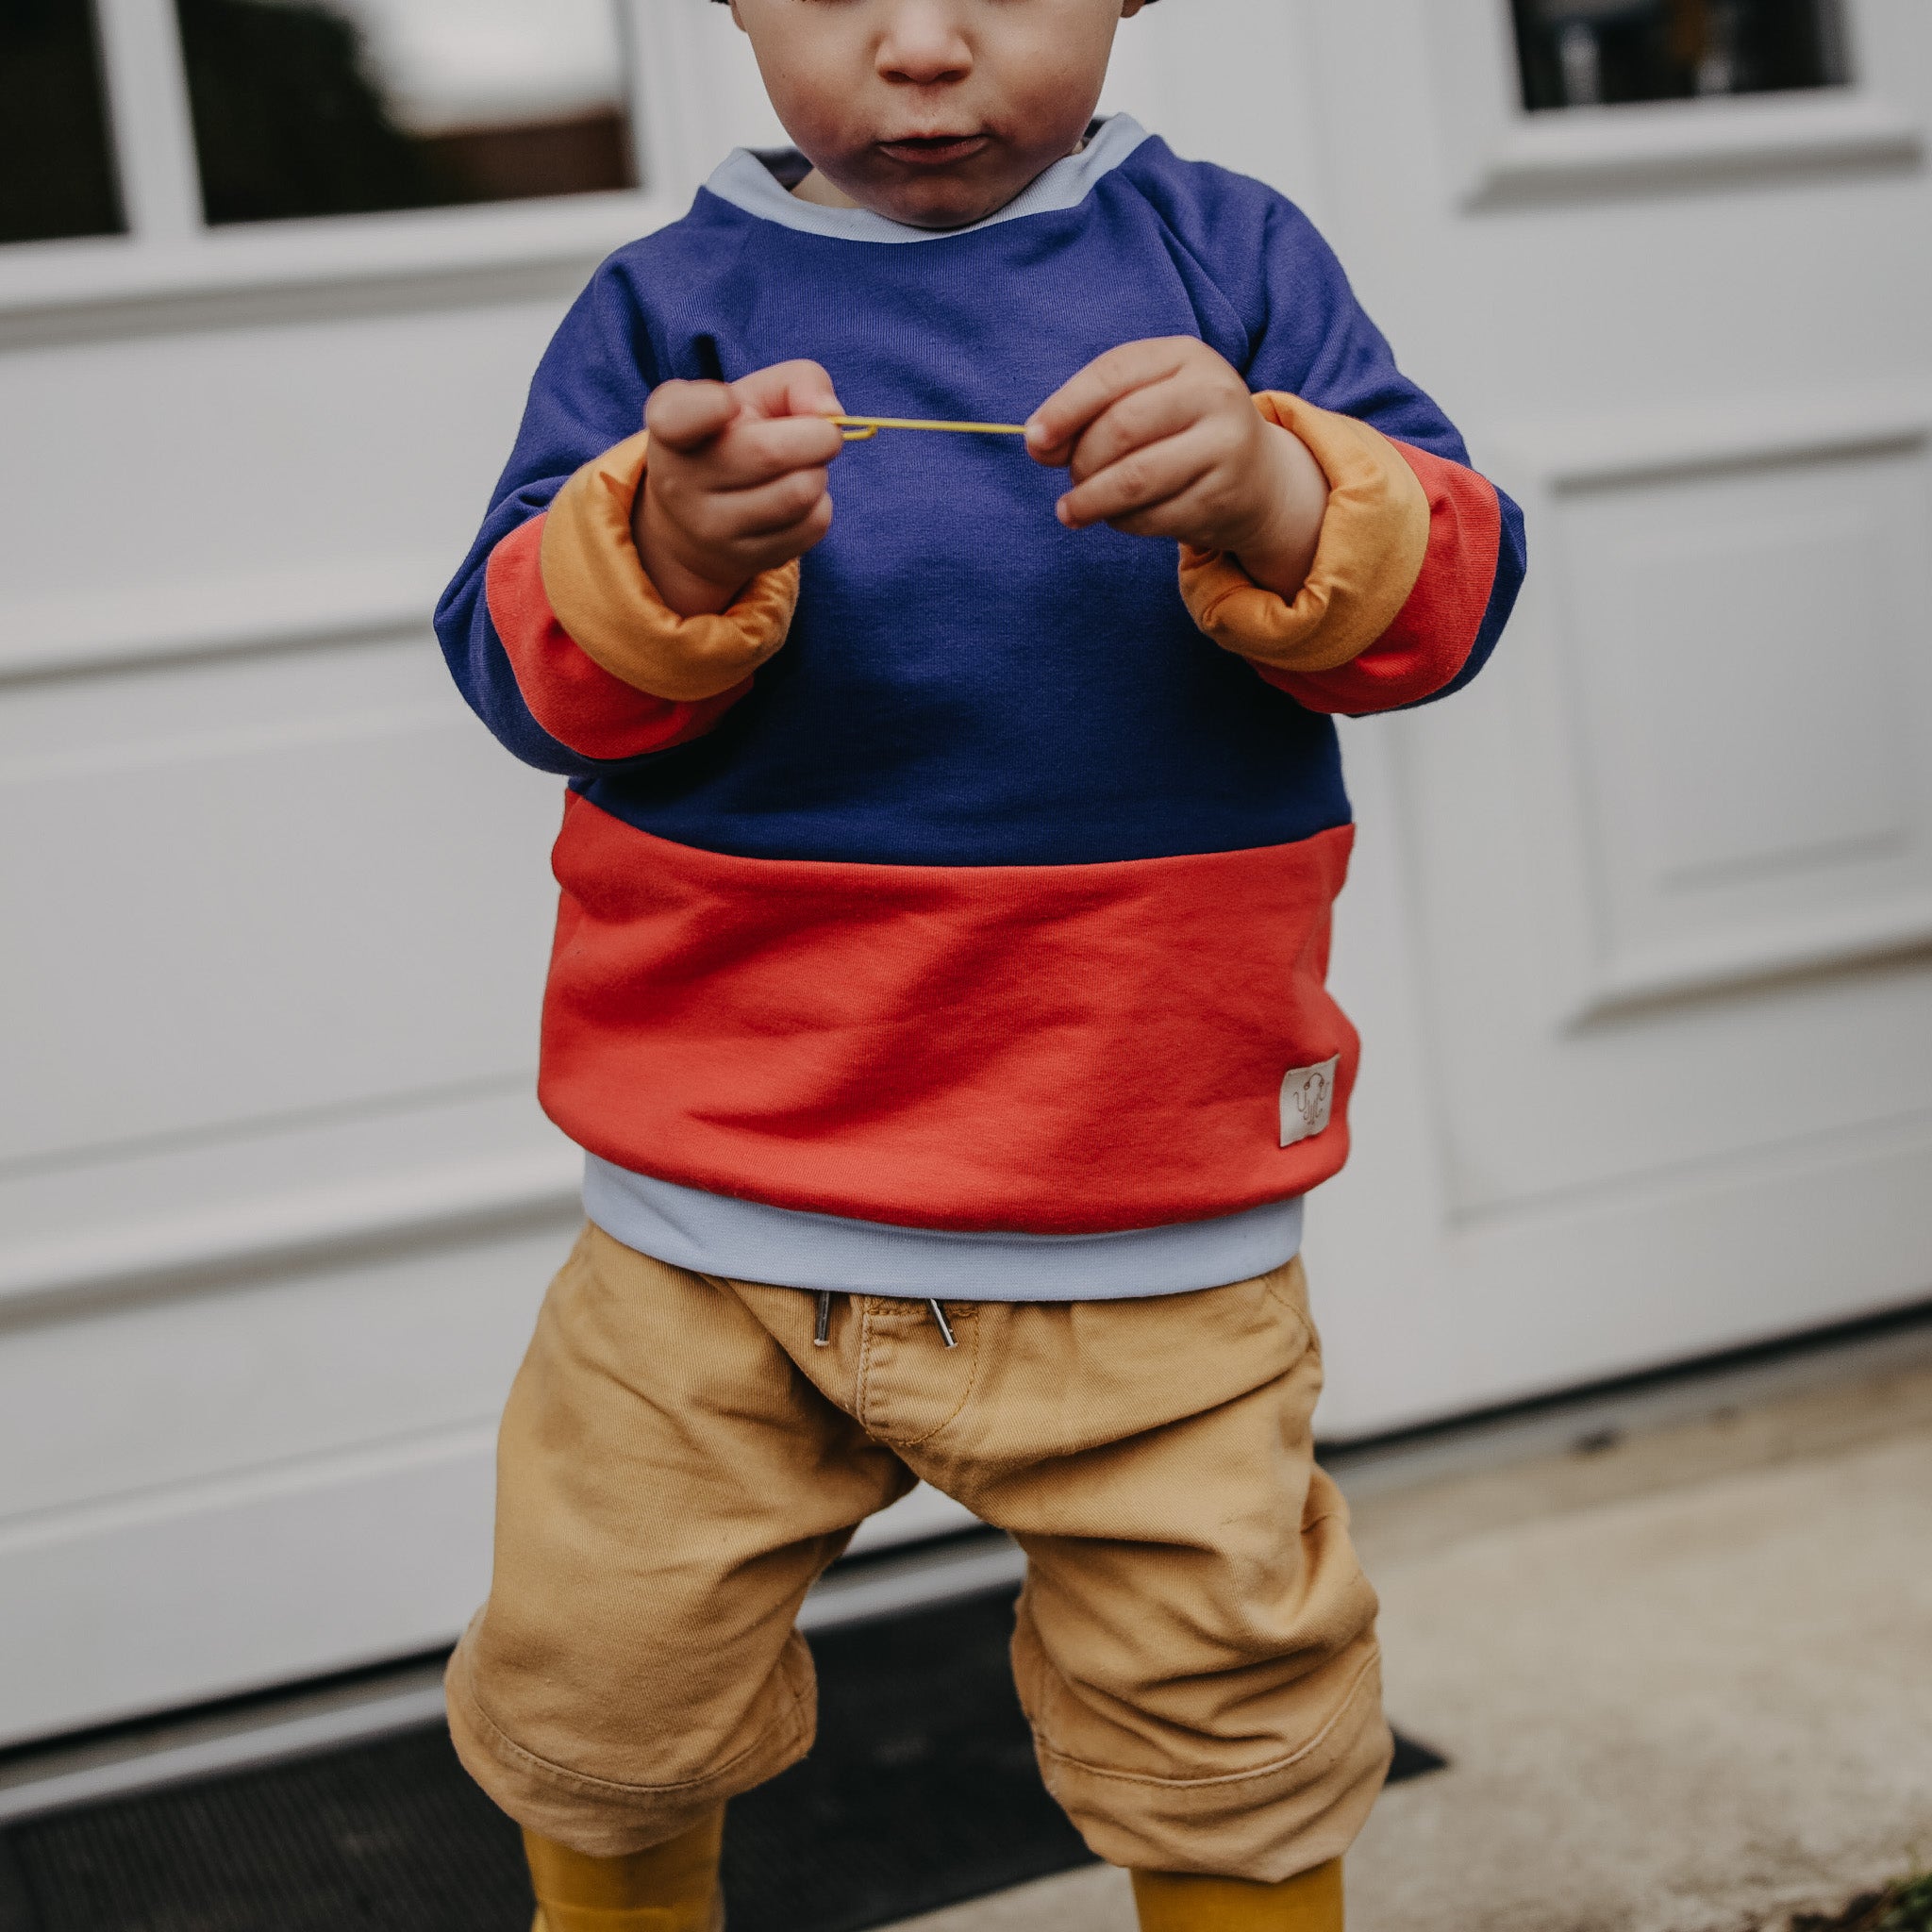 Kleinkind steht vor einer weißen Tür. Gesicht ist ab dem Mund nach oben hin vom Foto abgeschnitten. Hält einen kleinen Stock in der Hand. Kind trägt einen orange blauen colorblocking Pullover und eine kurze beige Hose.  .